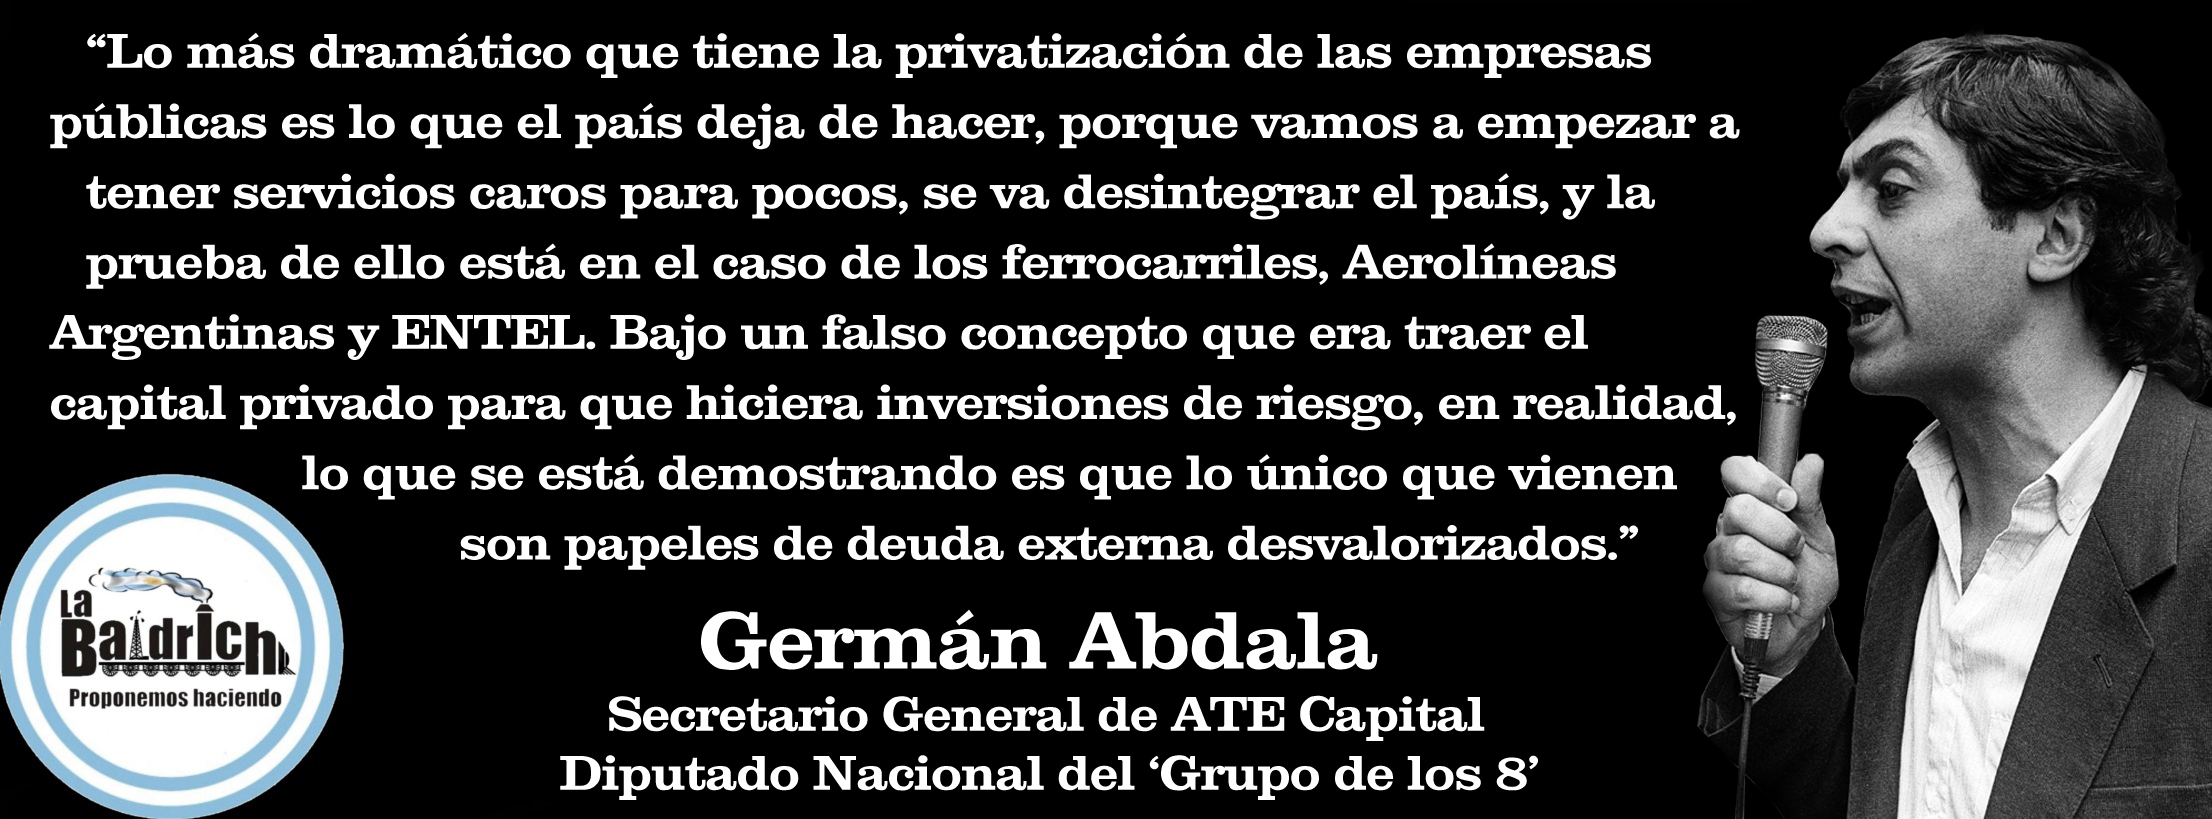 Germán Abdala sobre las privatizaciones